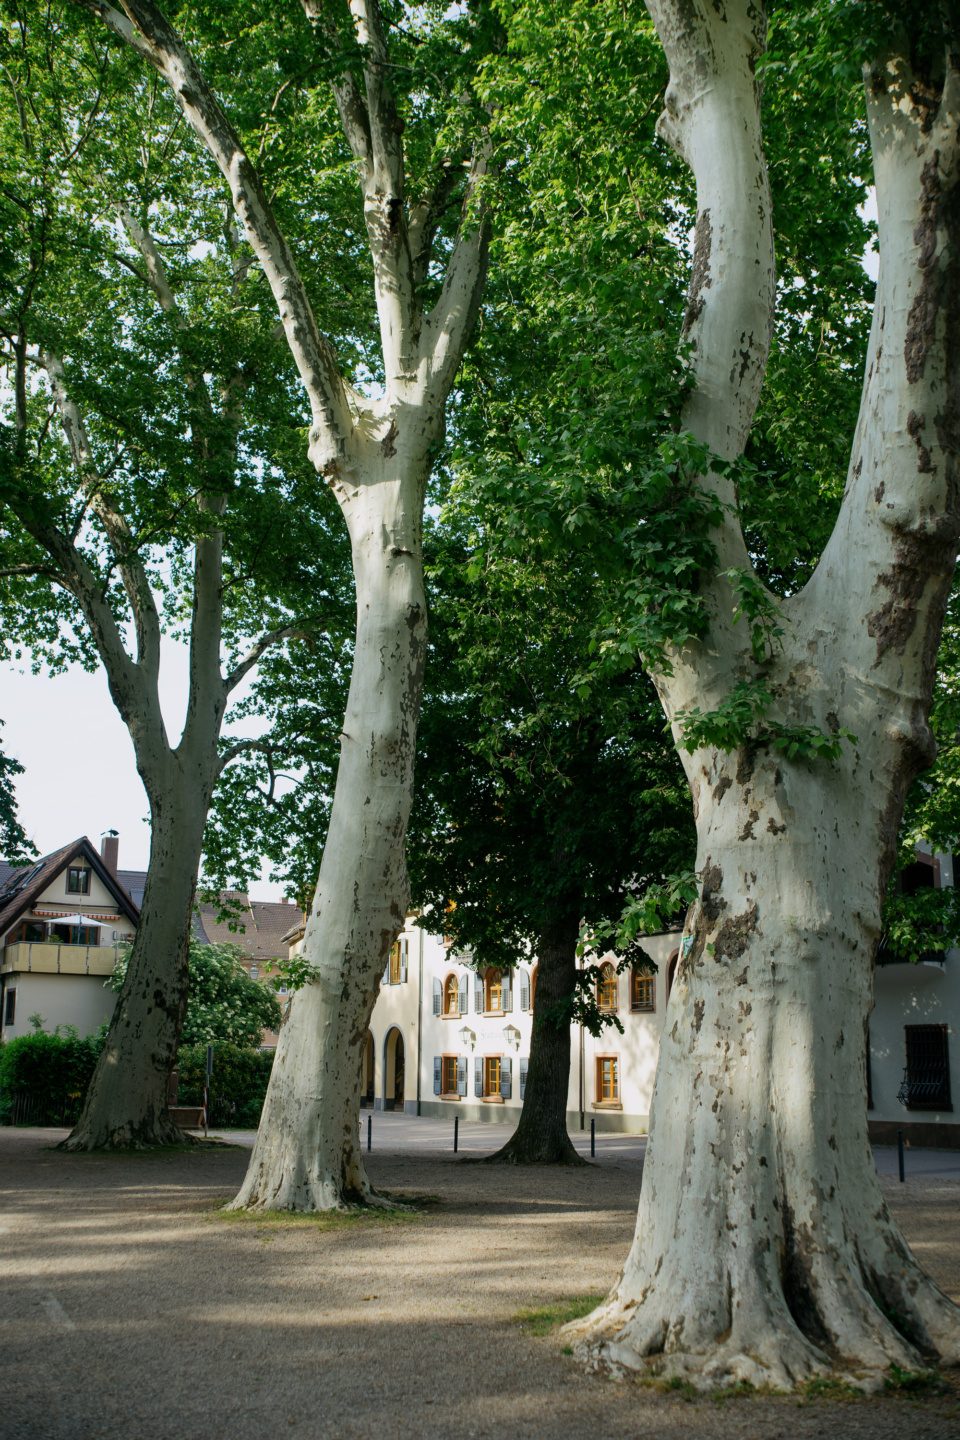 Platanus trees